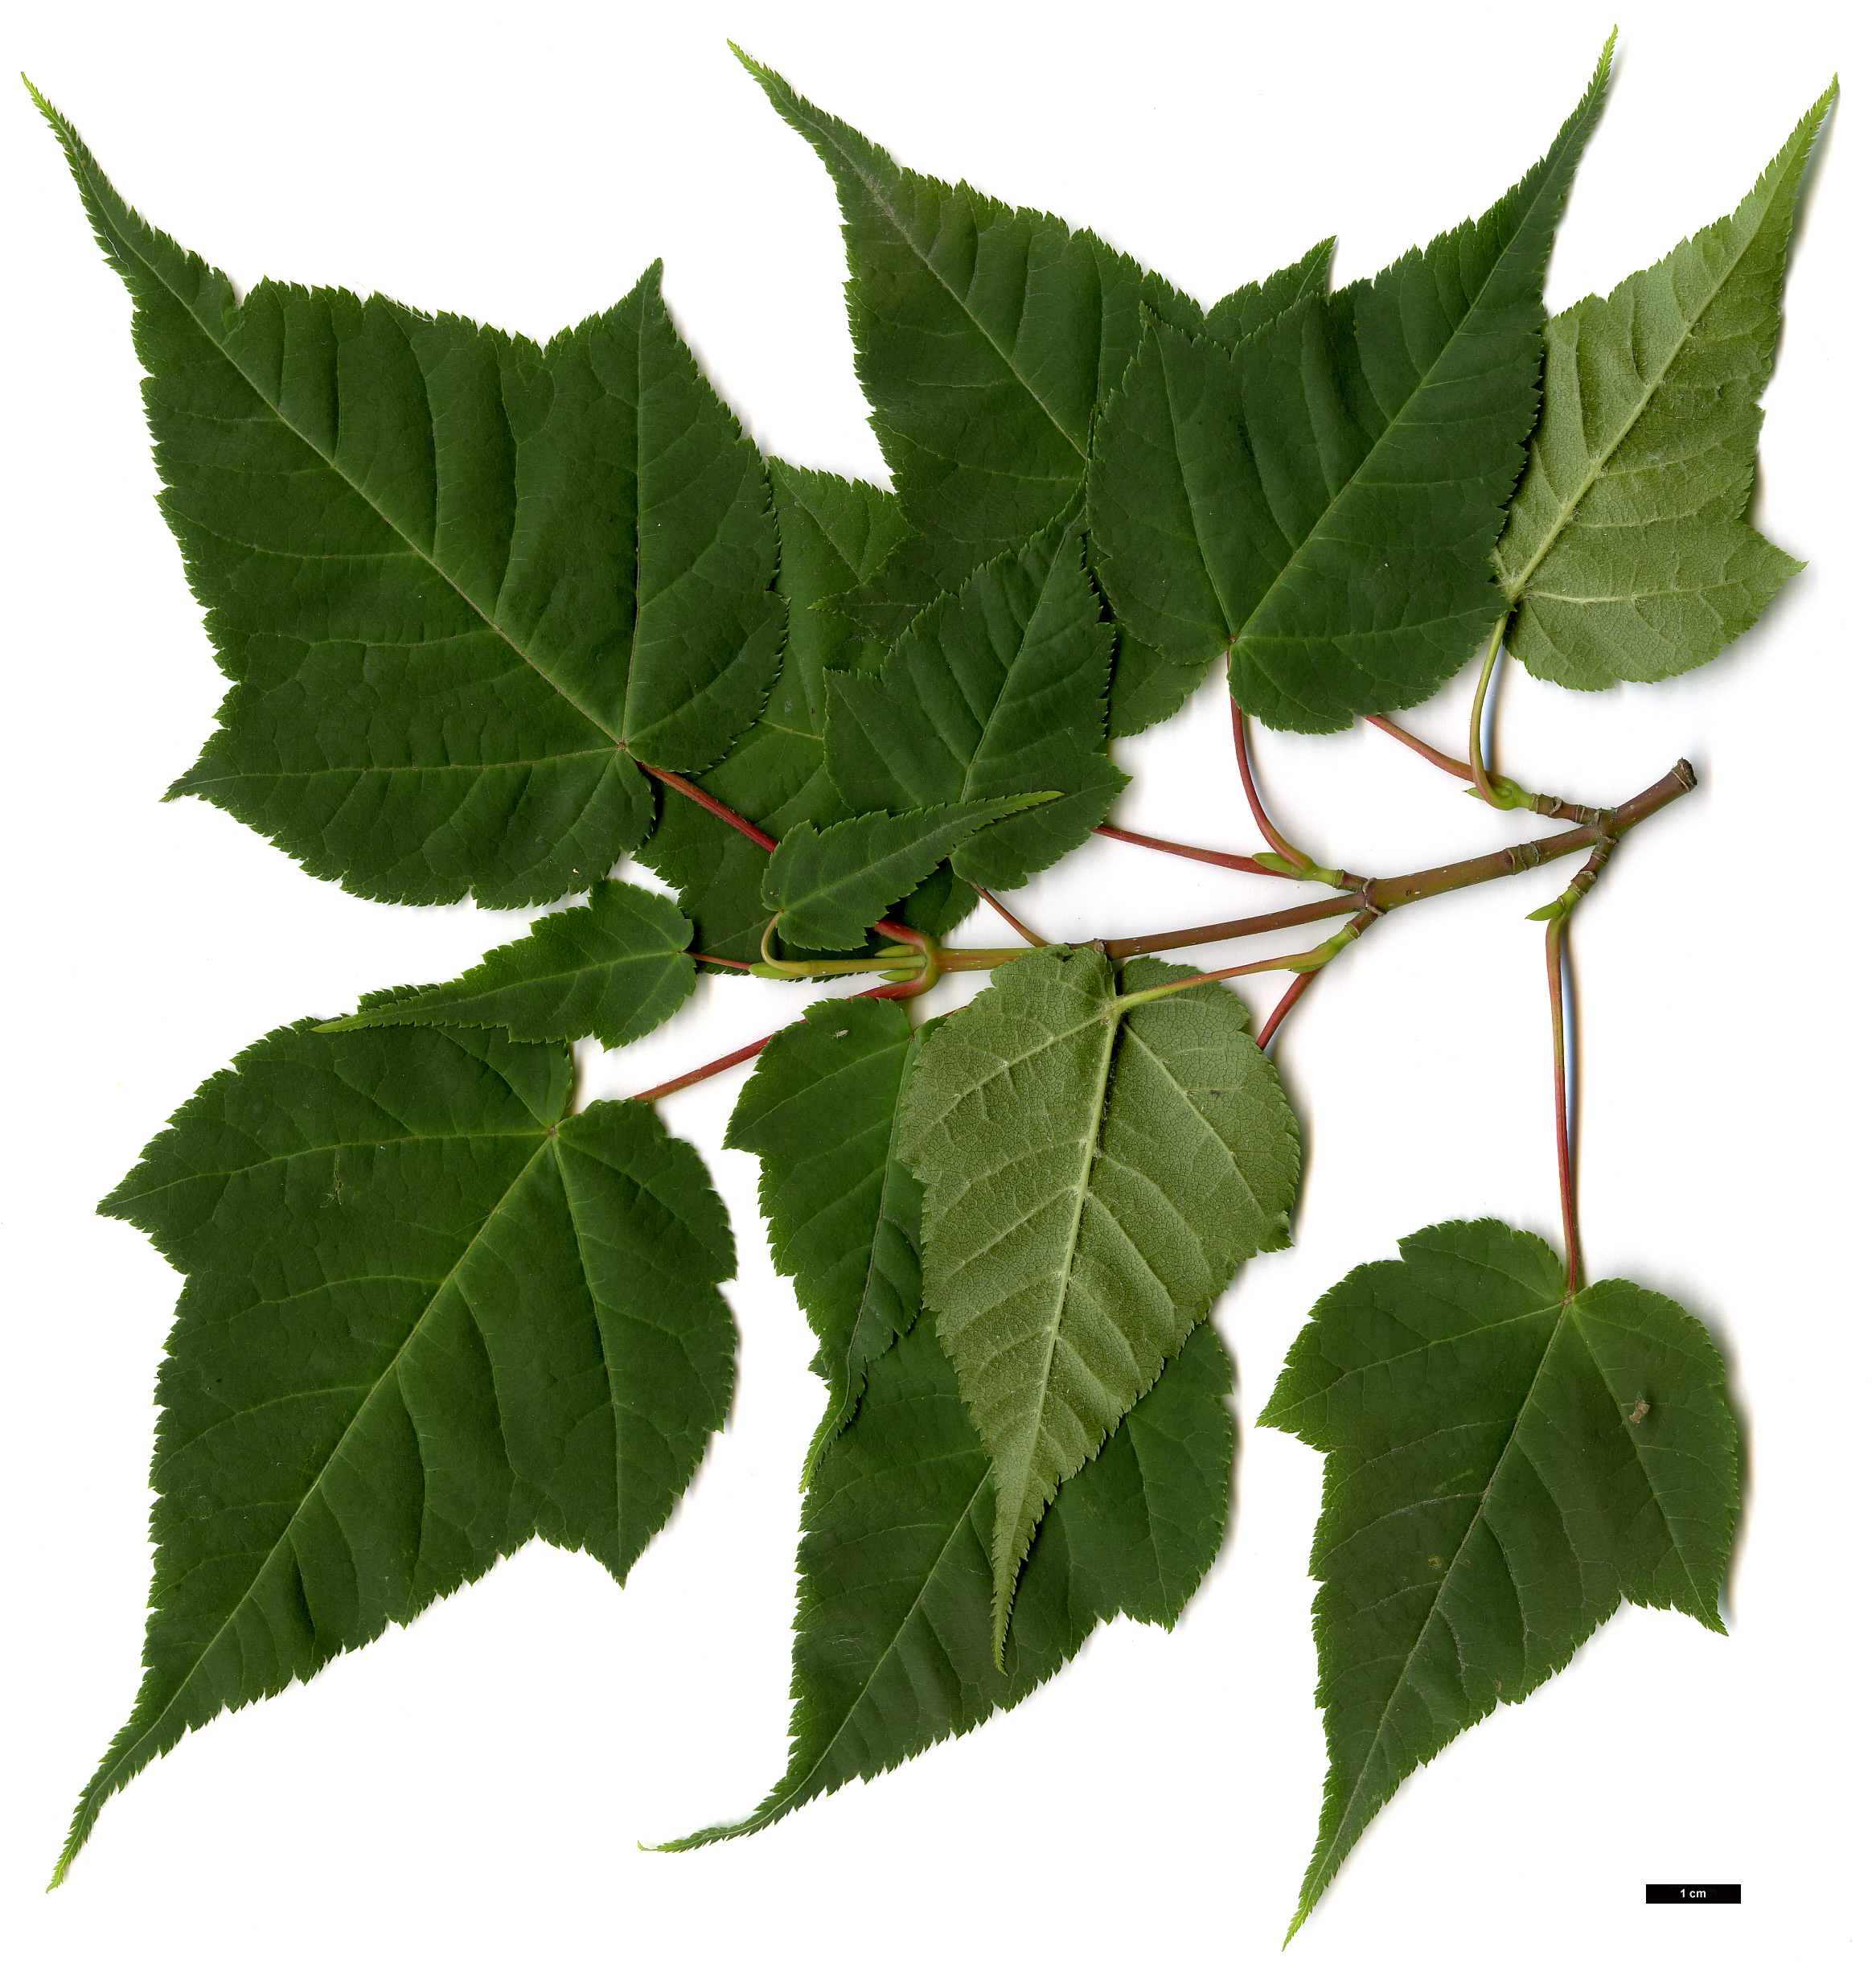 High resolution image: Family: Sapindaceae - Genus: Acer - Taxon: pectinatum